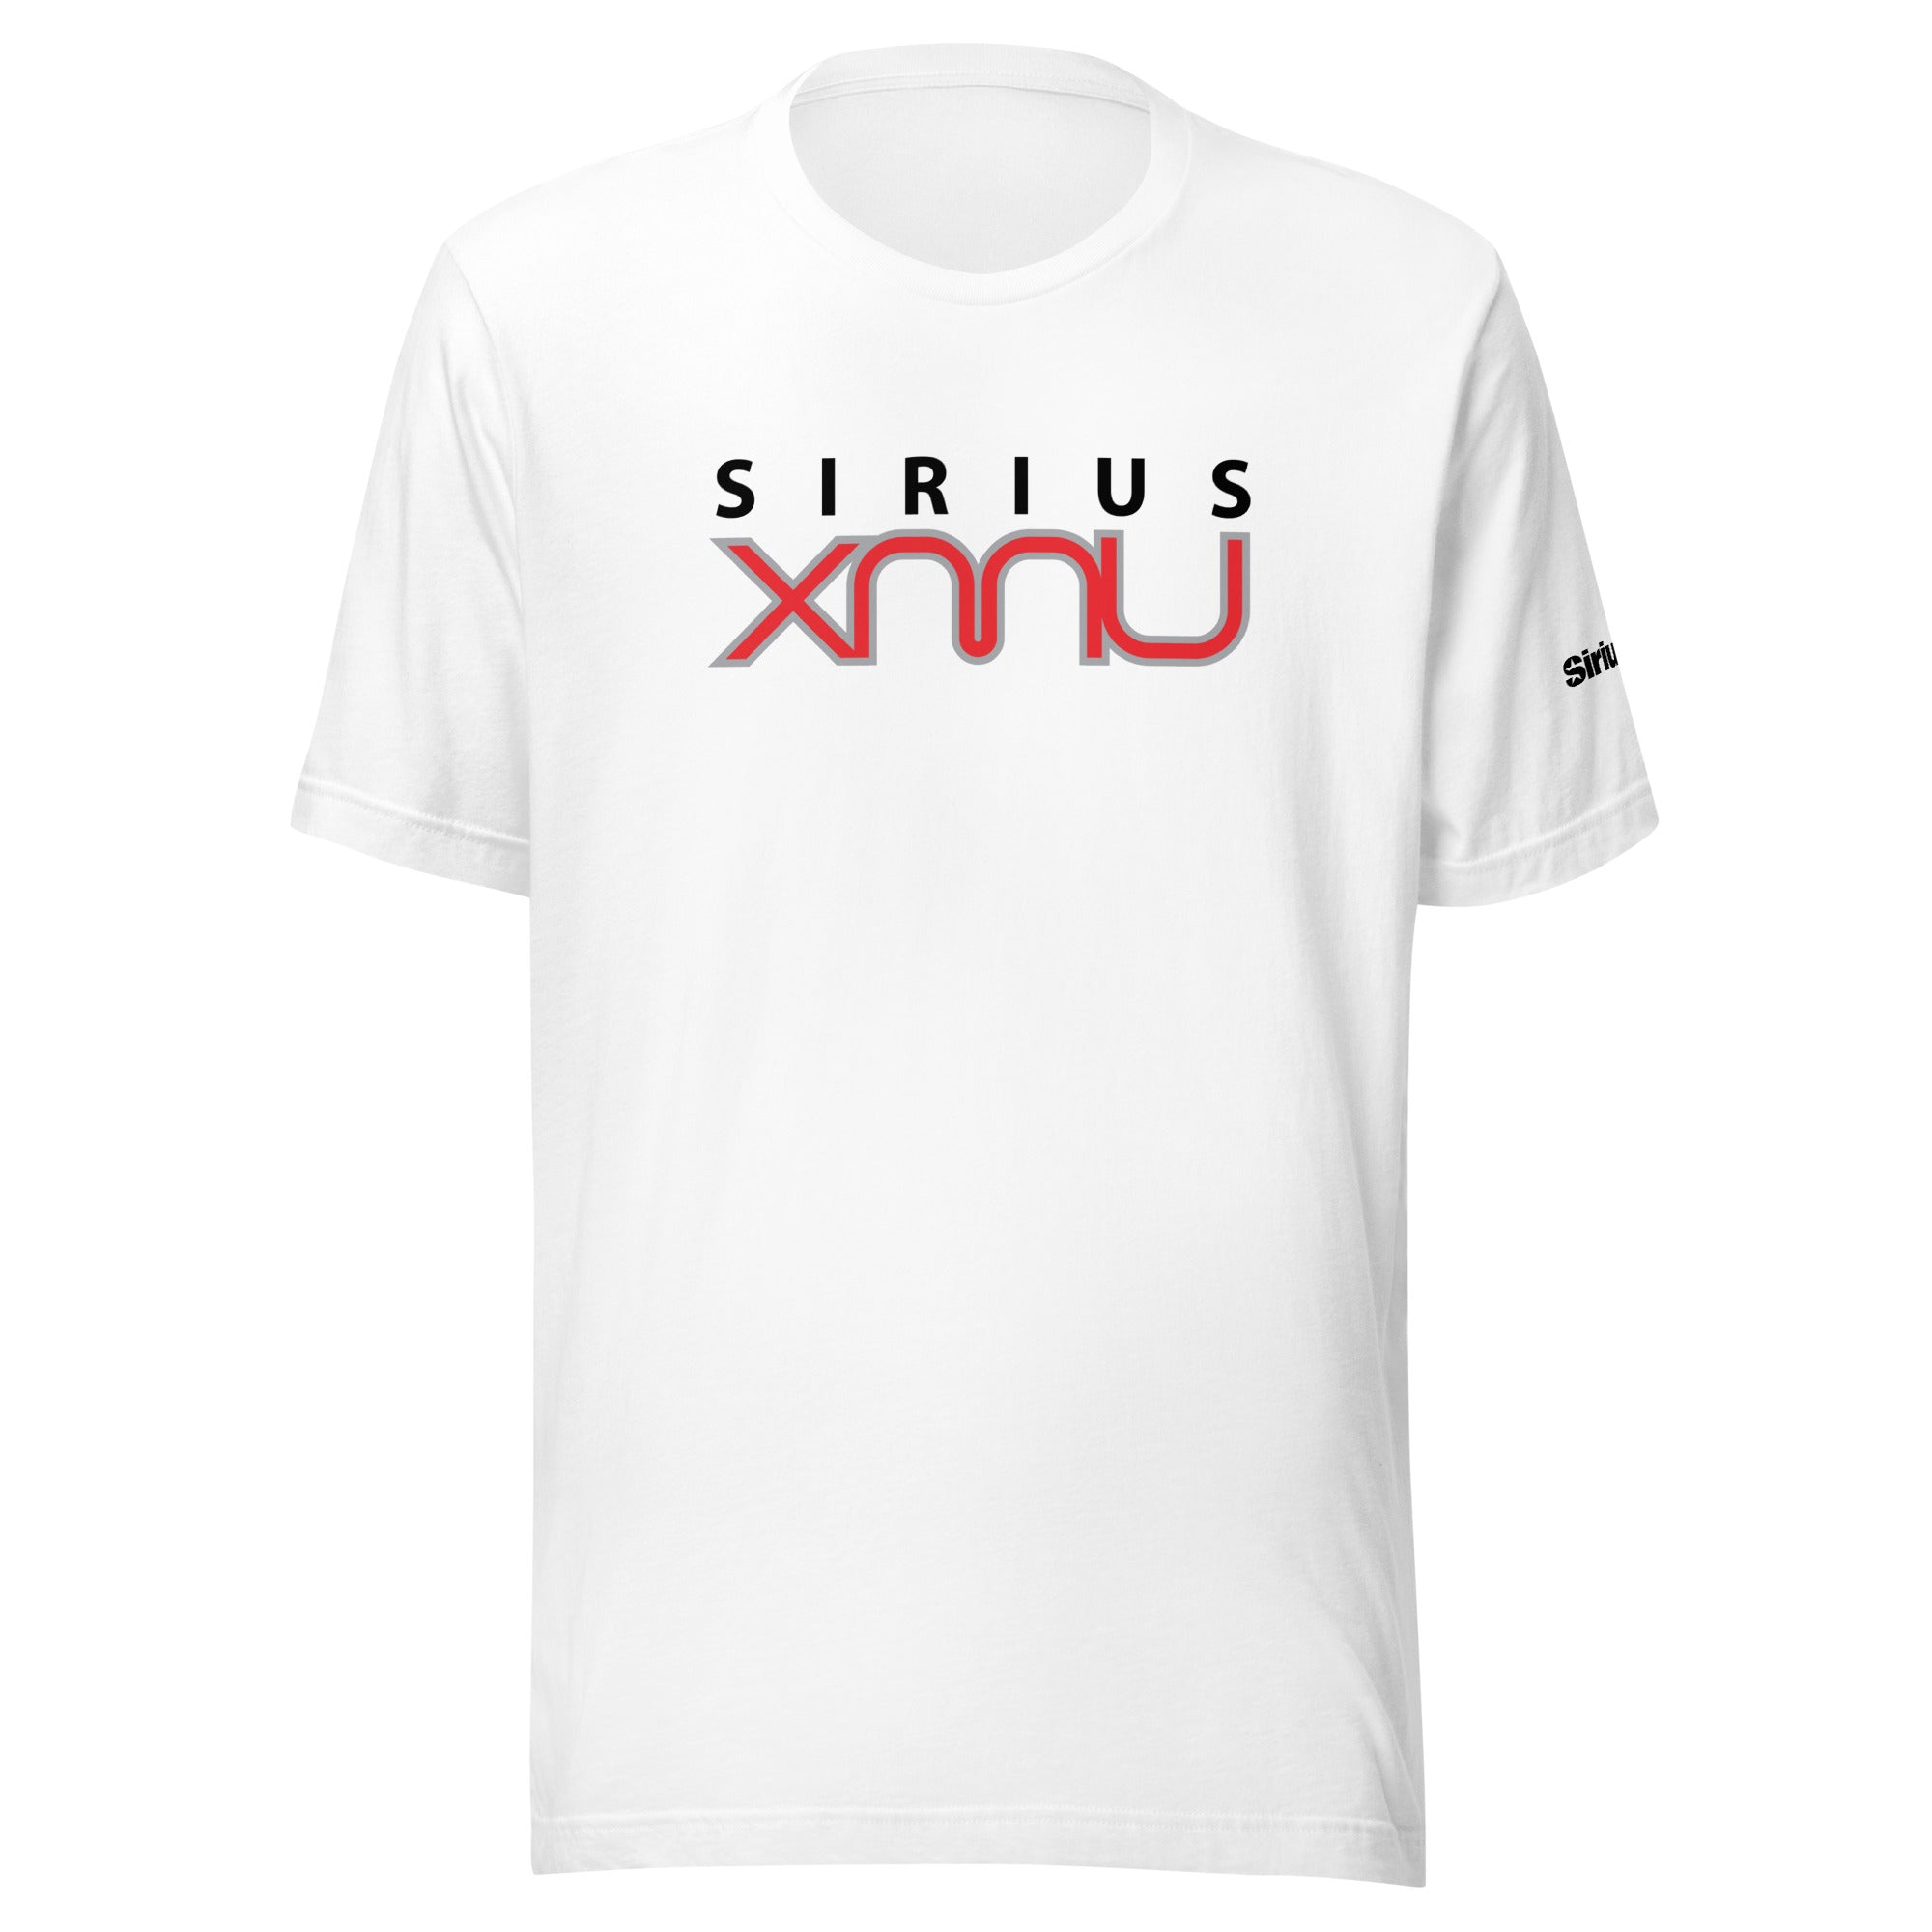 SiriusXMU: T-shirt (White)